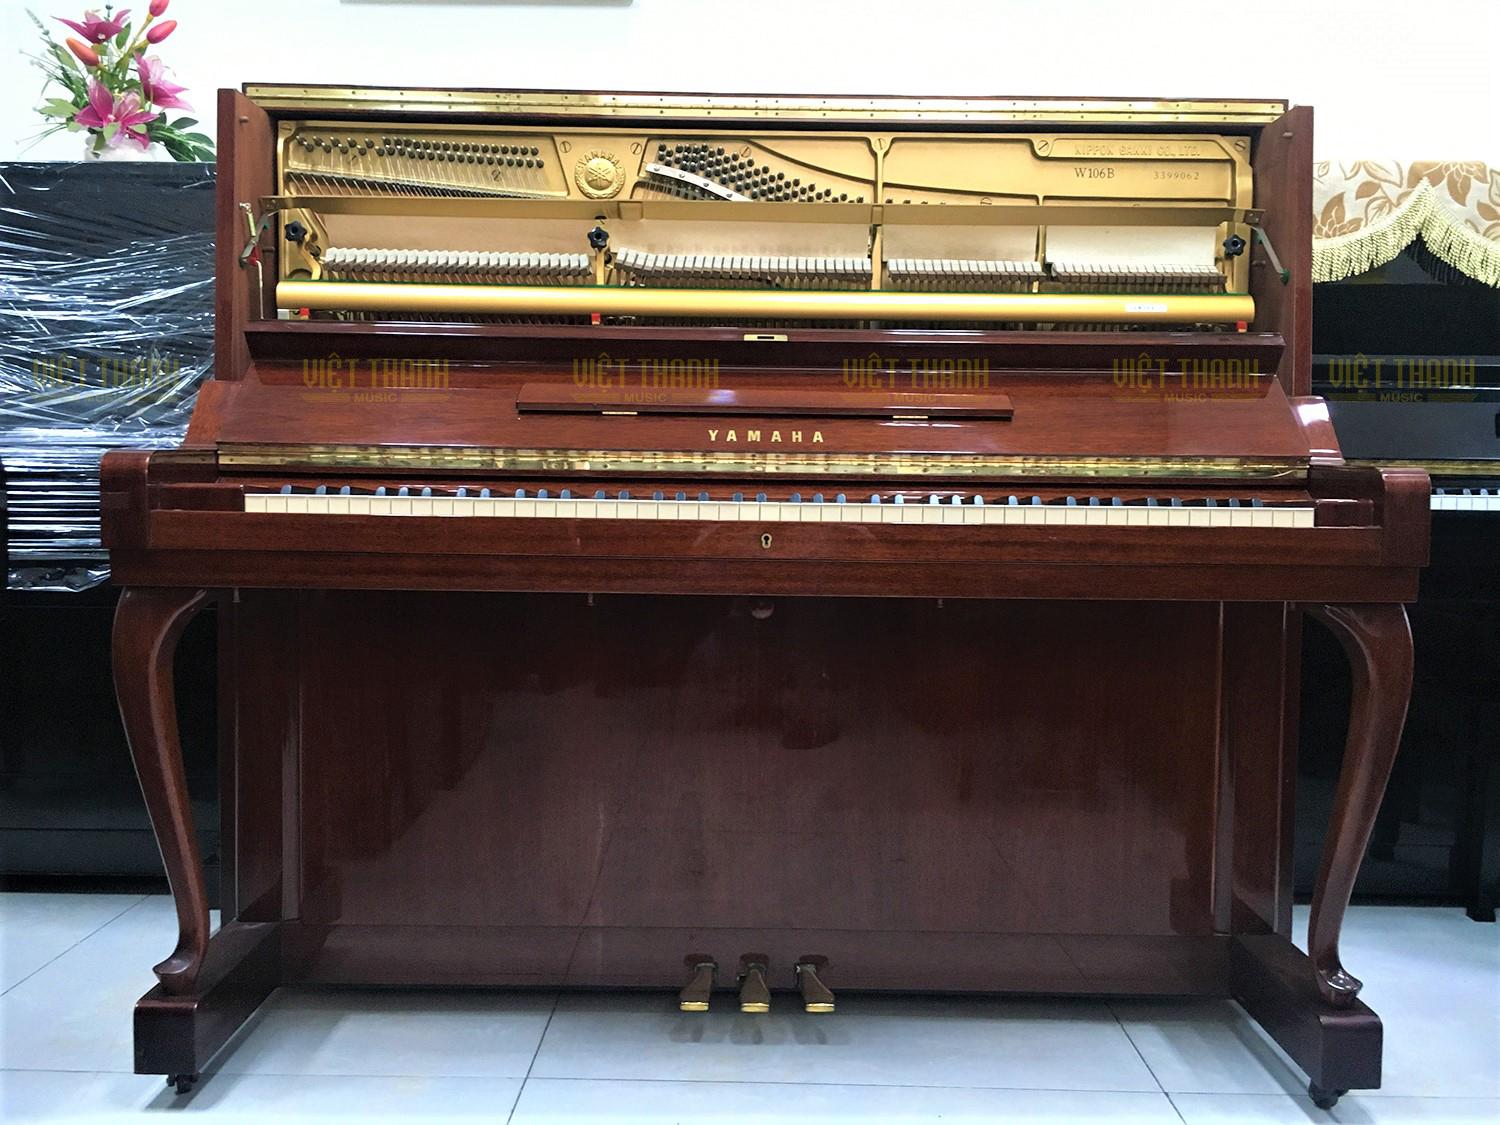 Đàn piano Yamaha W106B - 5